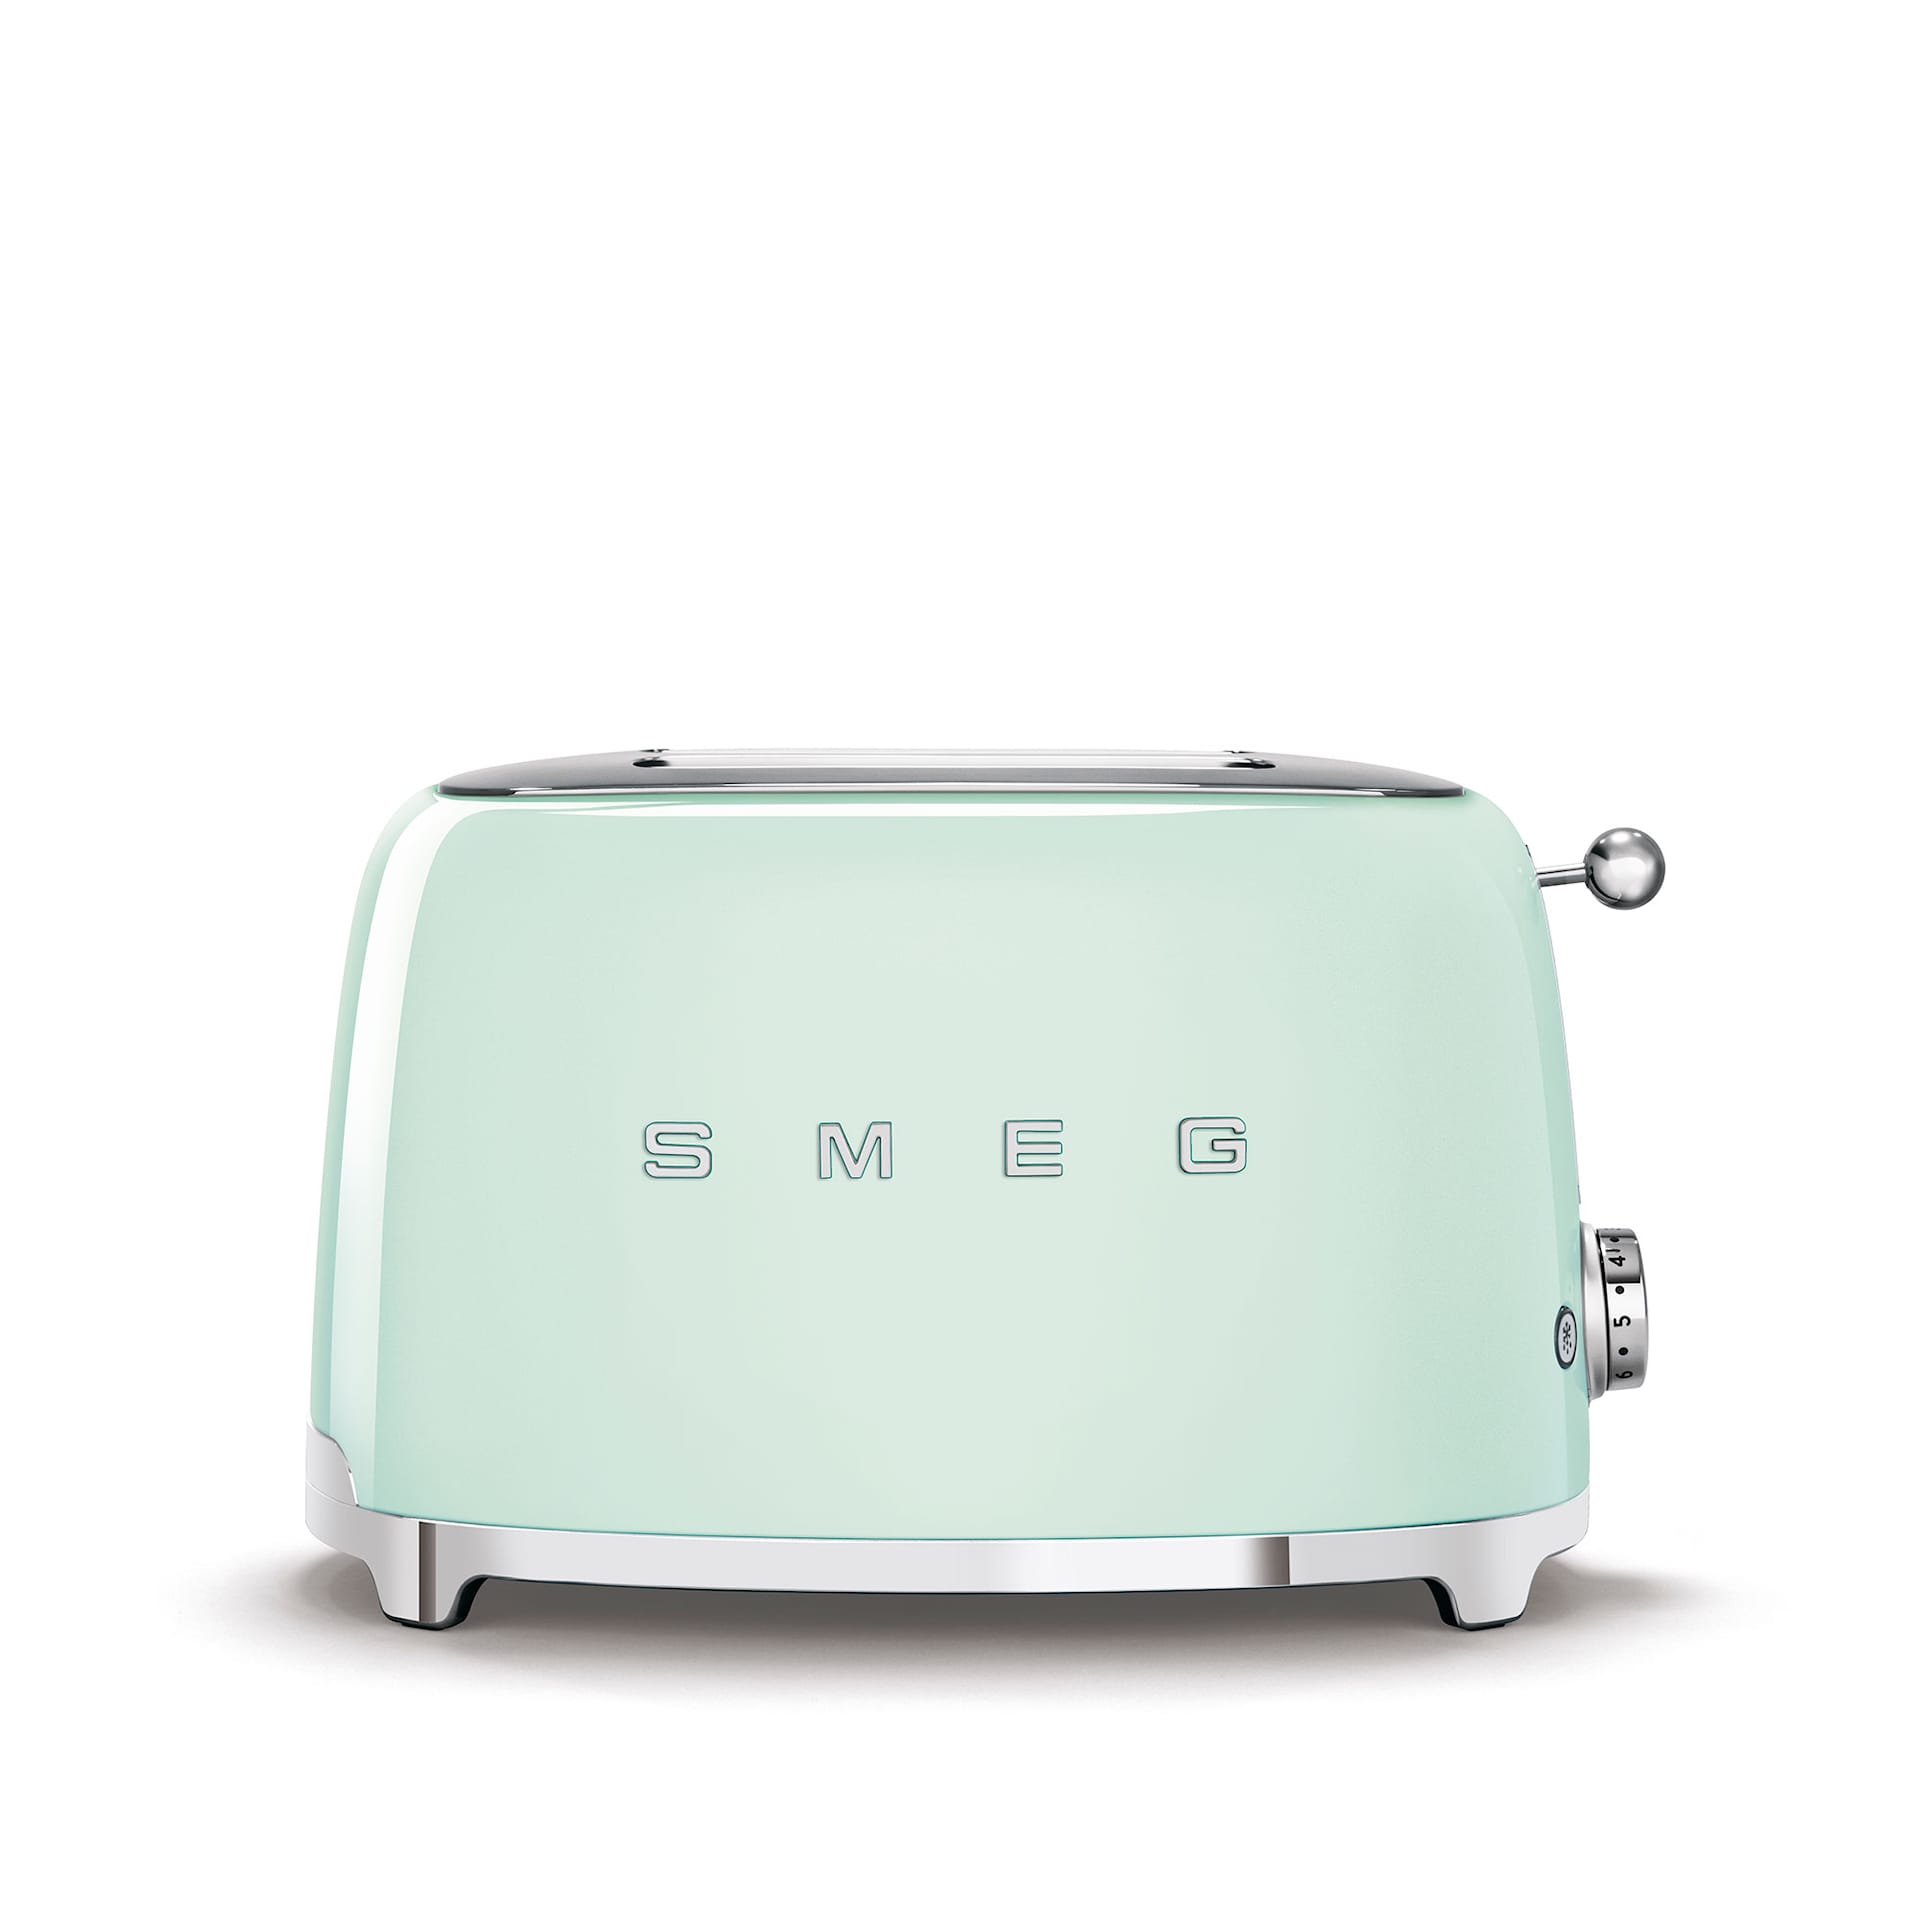 Smeg 2 Slice Toasters Pastel Green - Smeg - NO GA